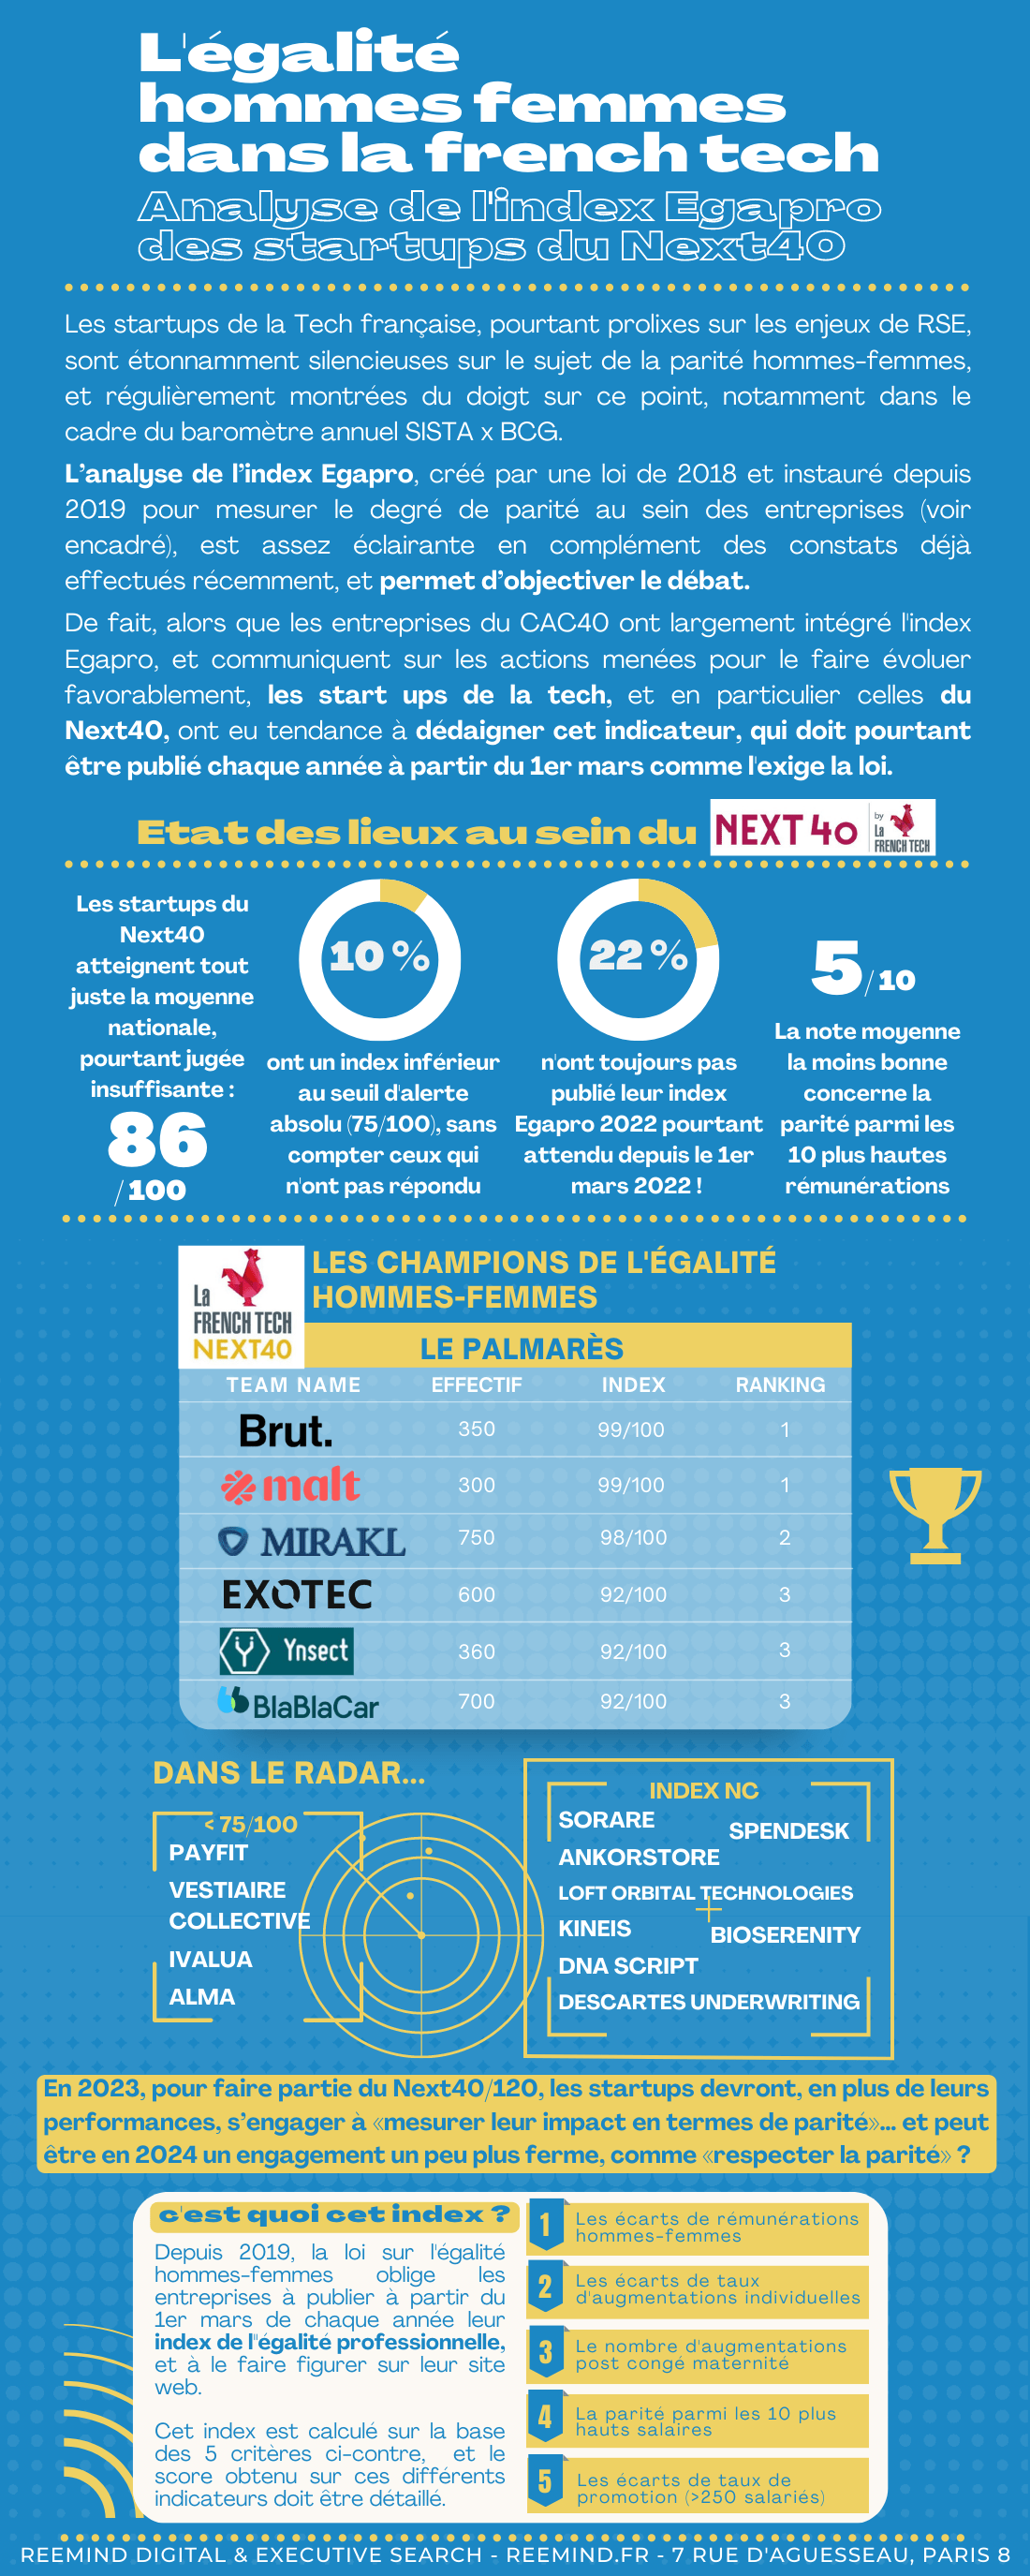 Infographie Reemind : l'égalité hommes femmes dans la French Tech